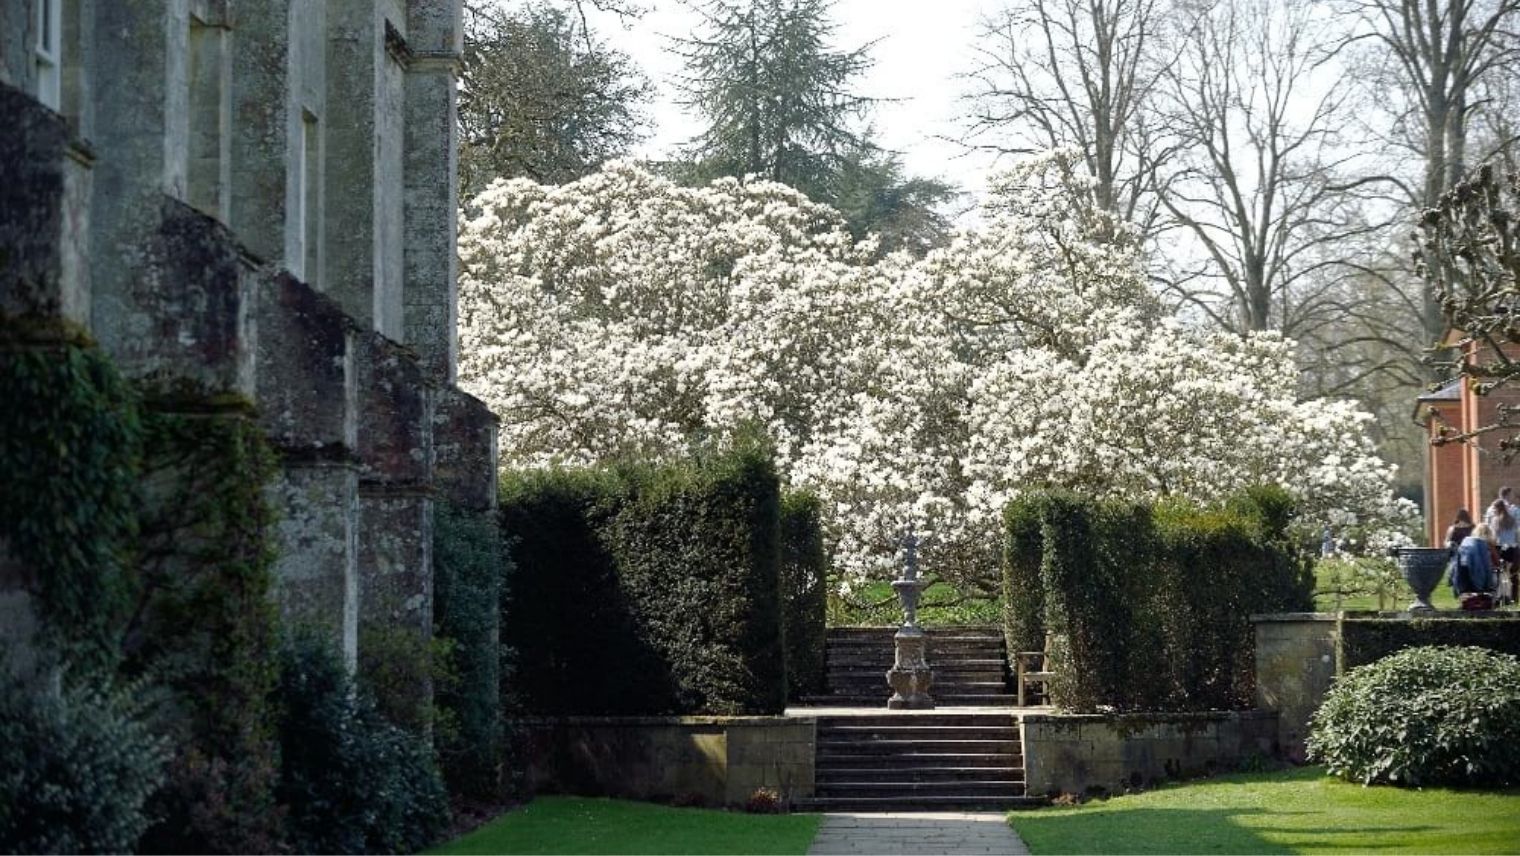 Magnolia blossom at Mottisfont Abbey